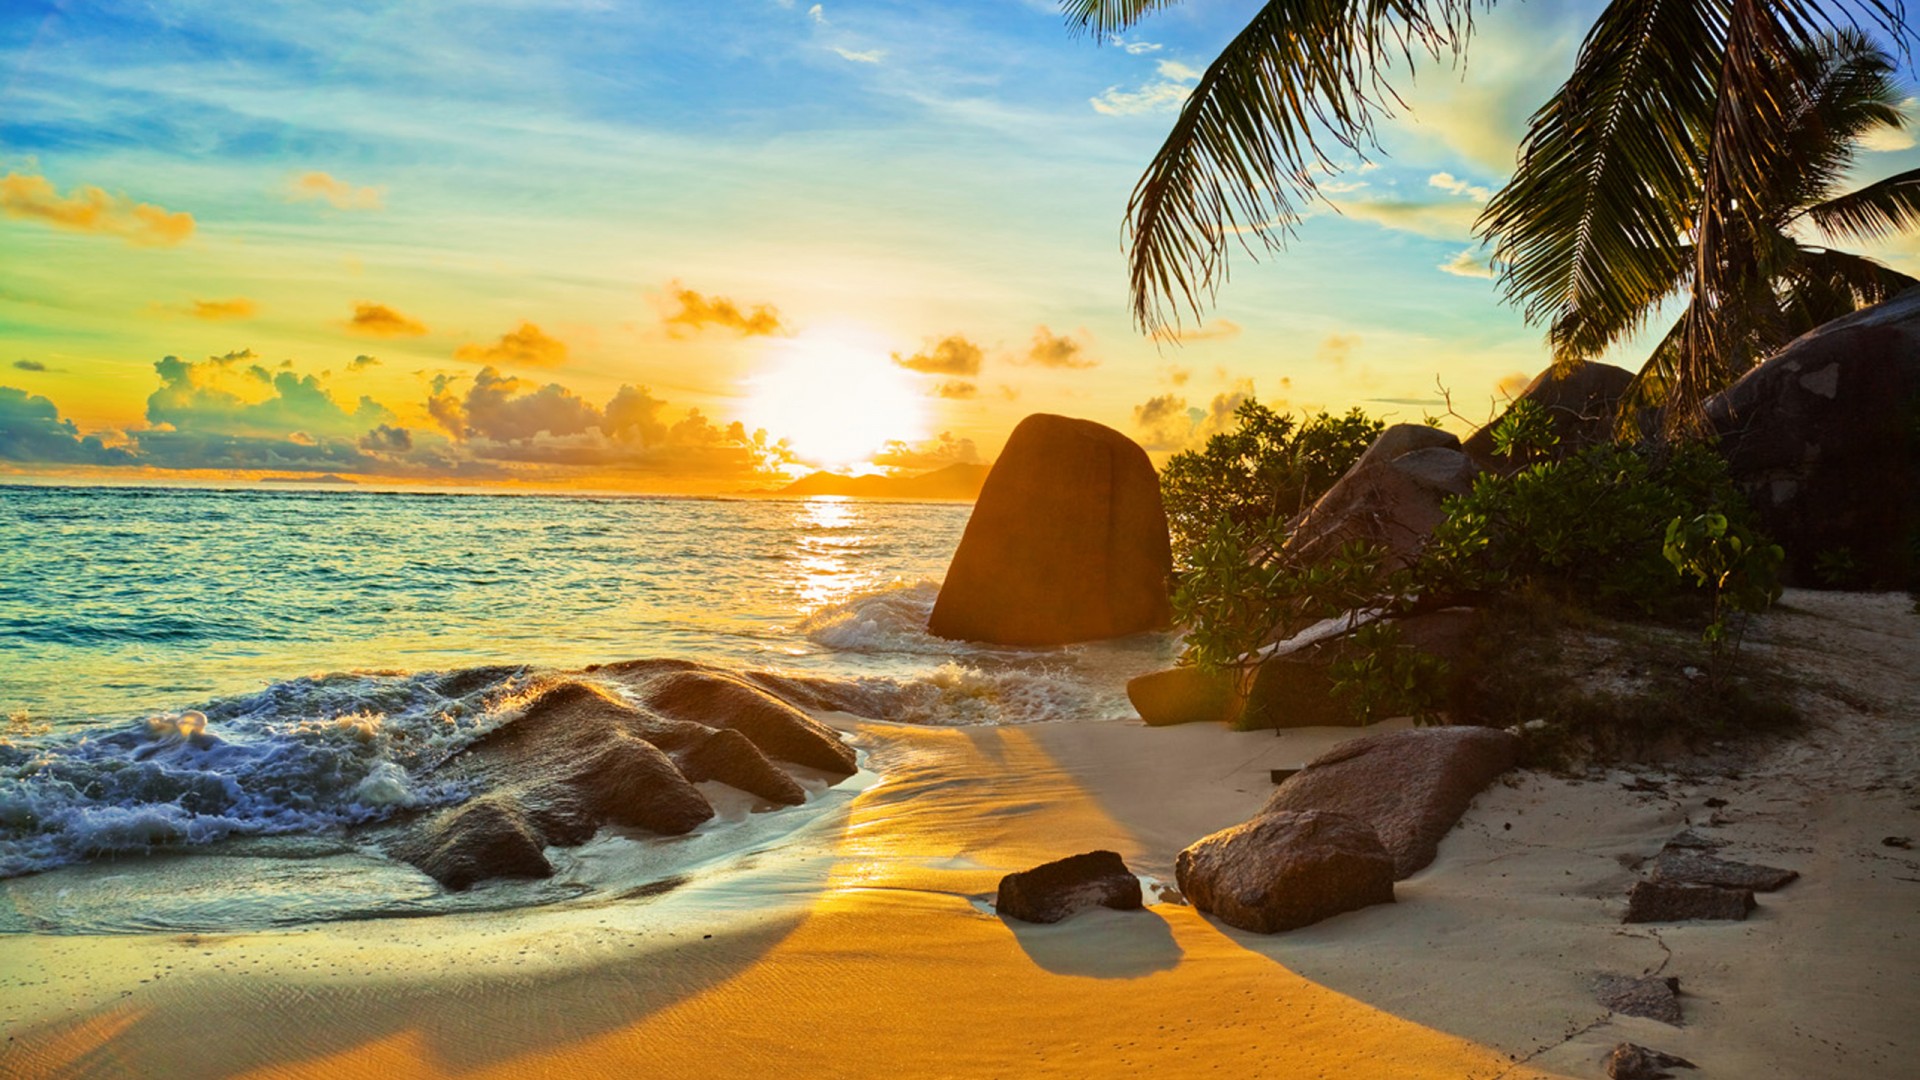 Tropical - Tropical Beach Sunset Wallpaper Hd , HD Wallpaper & Backgrounds